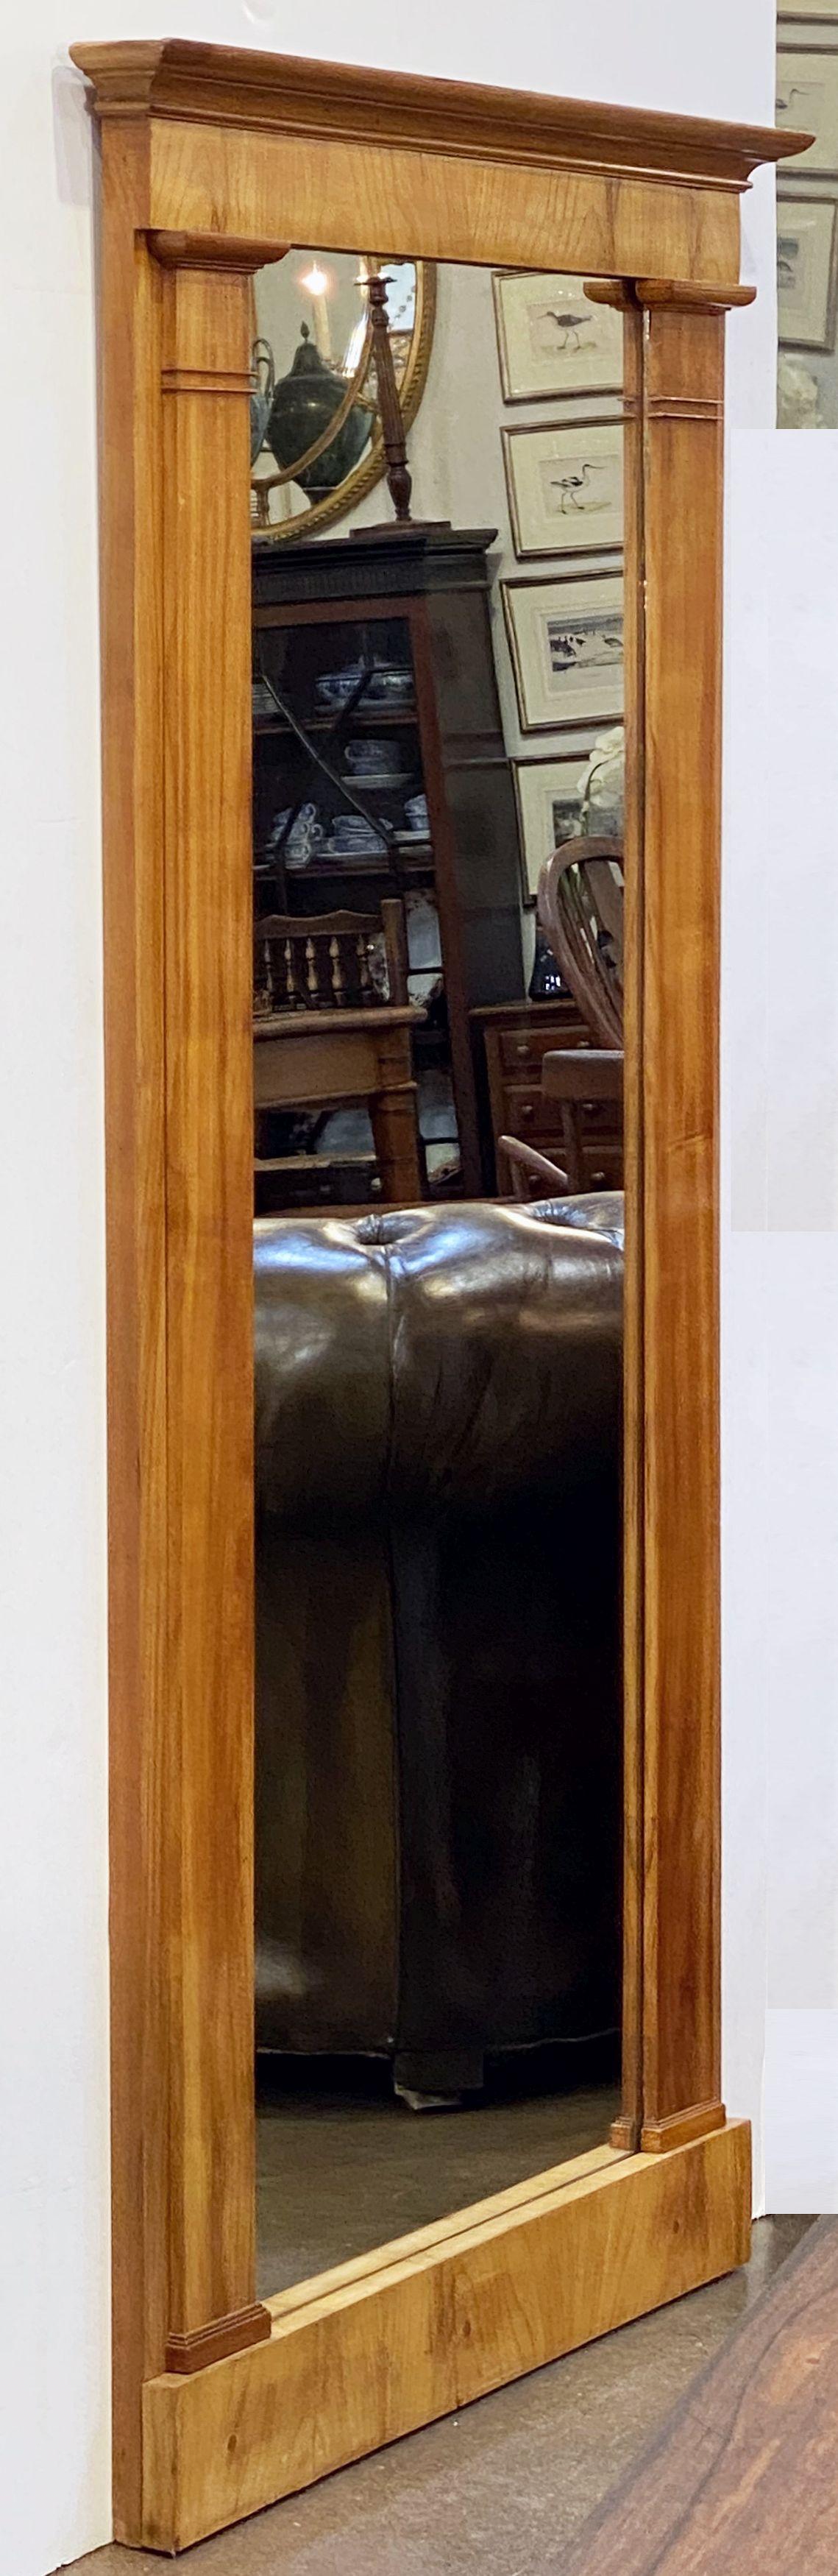 Ein hoher eleganter französischer Pfeilerspiegel aus dem 19. Jahrhundert im Biedermeier-Stil mit einem schönen Rahmen aus Kirschholz mit einer weichen, reichen Patina. Perfekt als Wand- oder Flurspiegel oder als bodenlanger Ankleidespiegel. 

Die